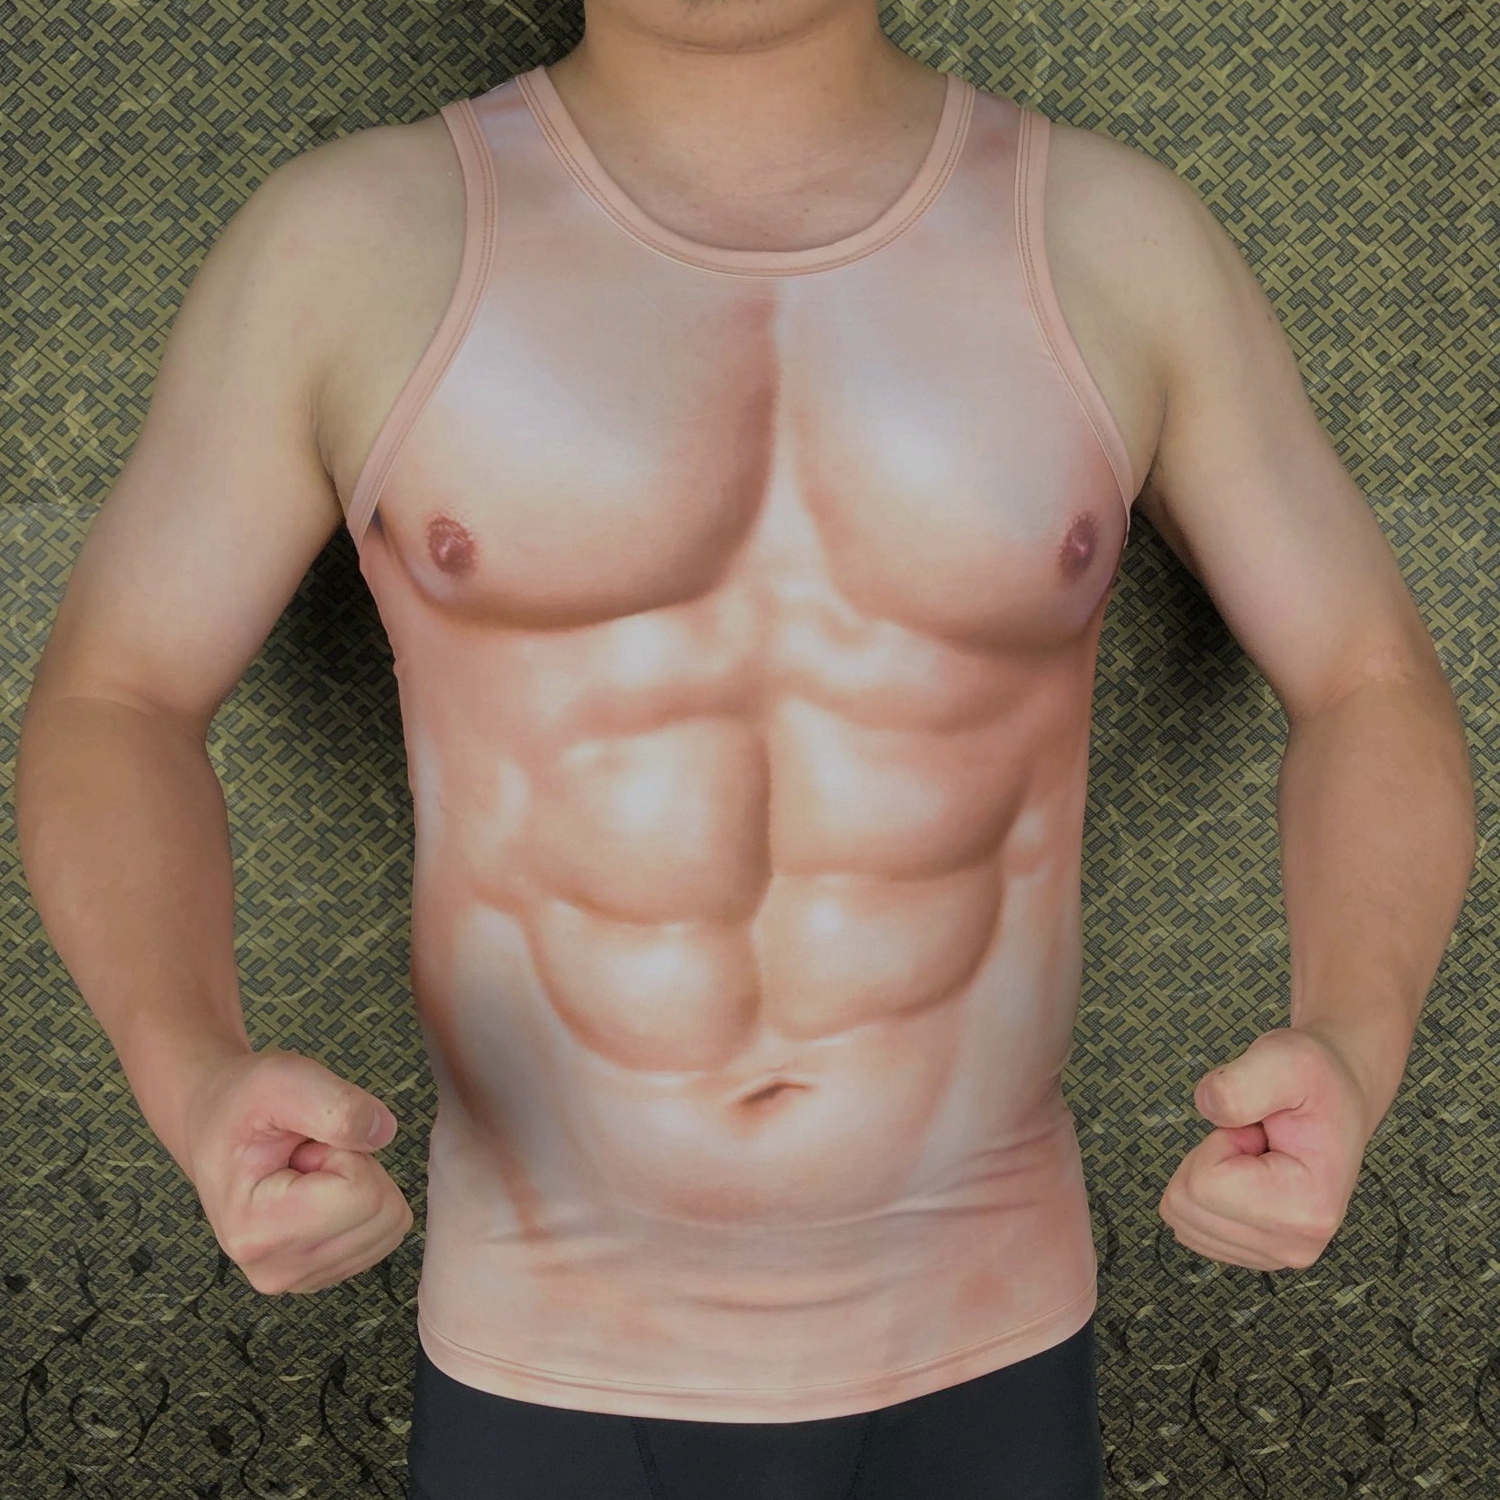 个性肌肉男背心t恤抖音猩猩创意假腹肌恶搞衣服3D立体肤色上衣潮